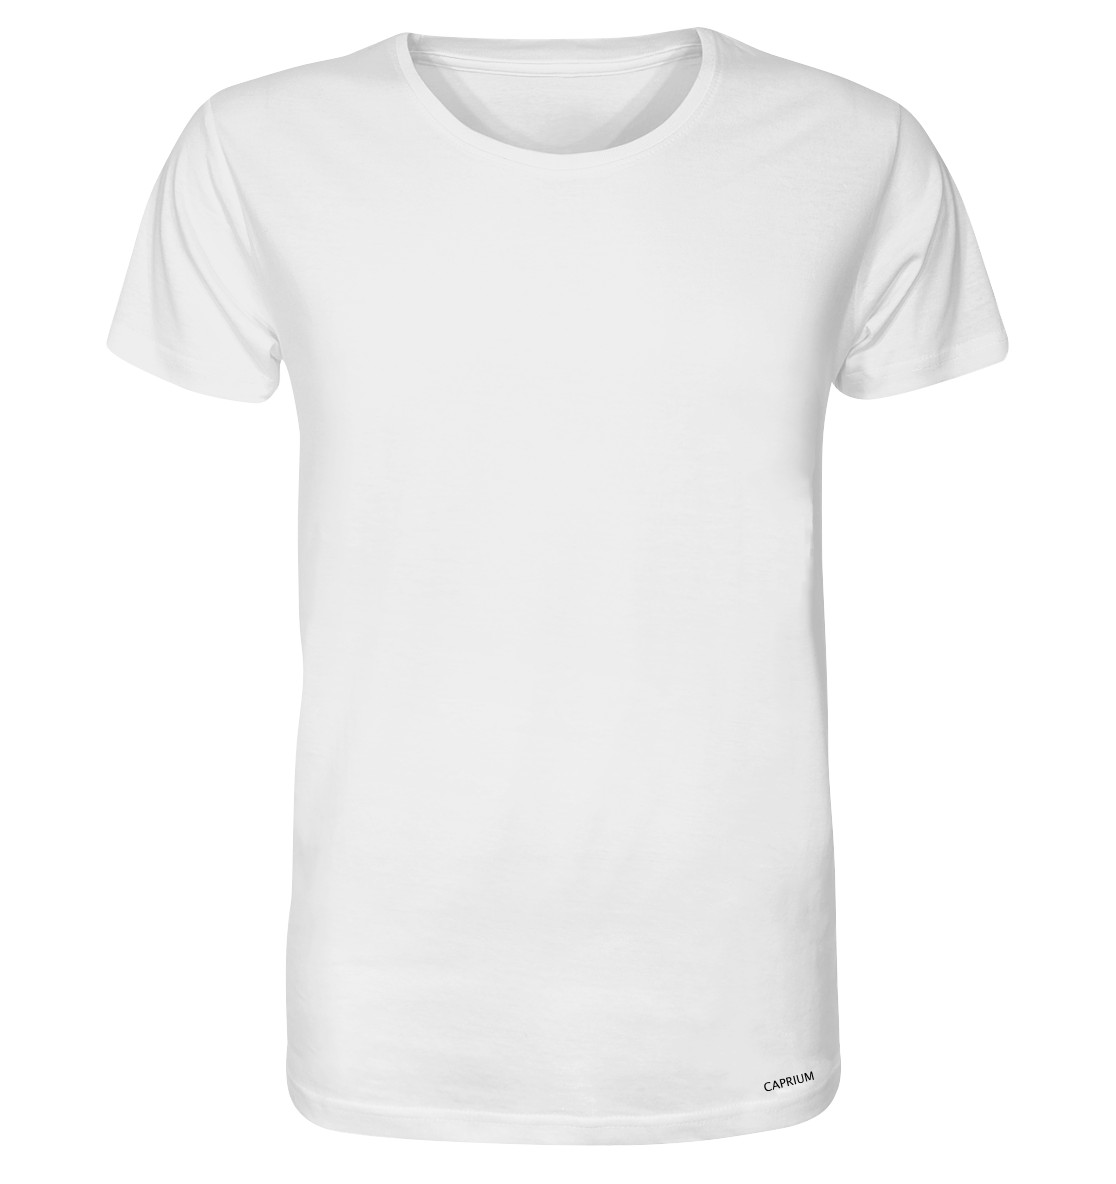 T-Shirt - CAPRIUM